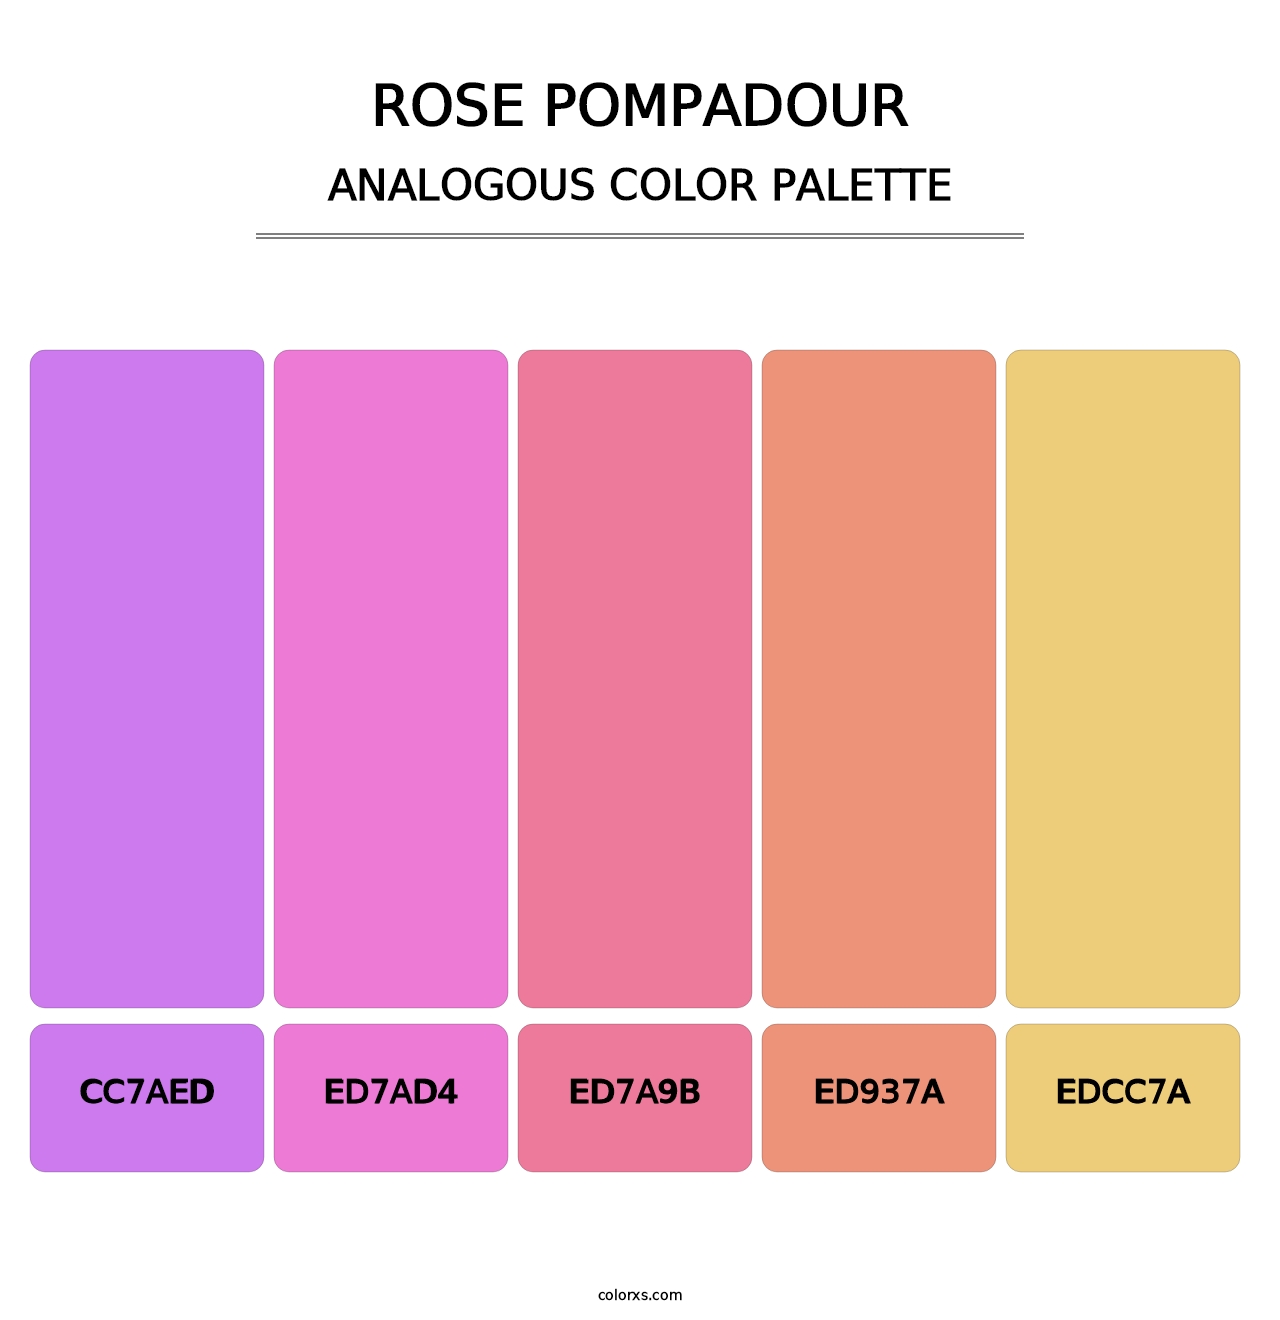 Rose Pompadour - Analogous Color Palette